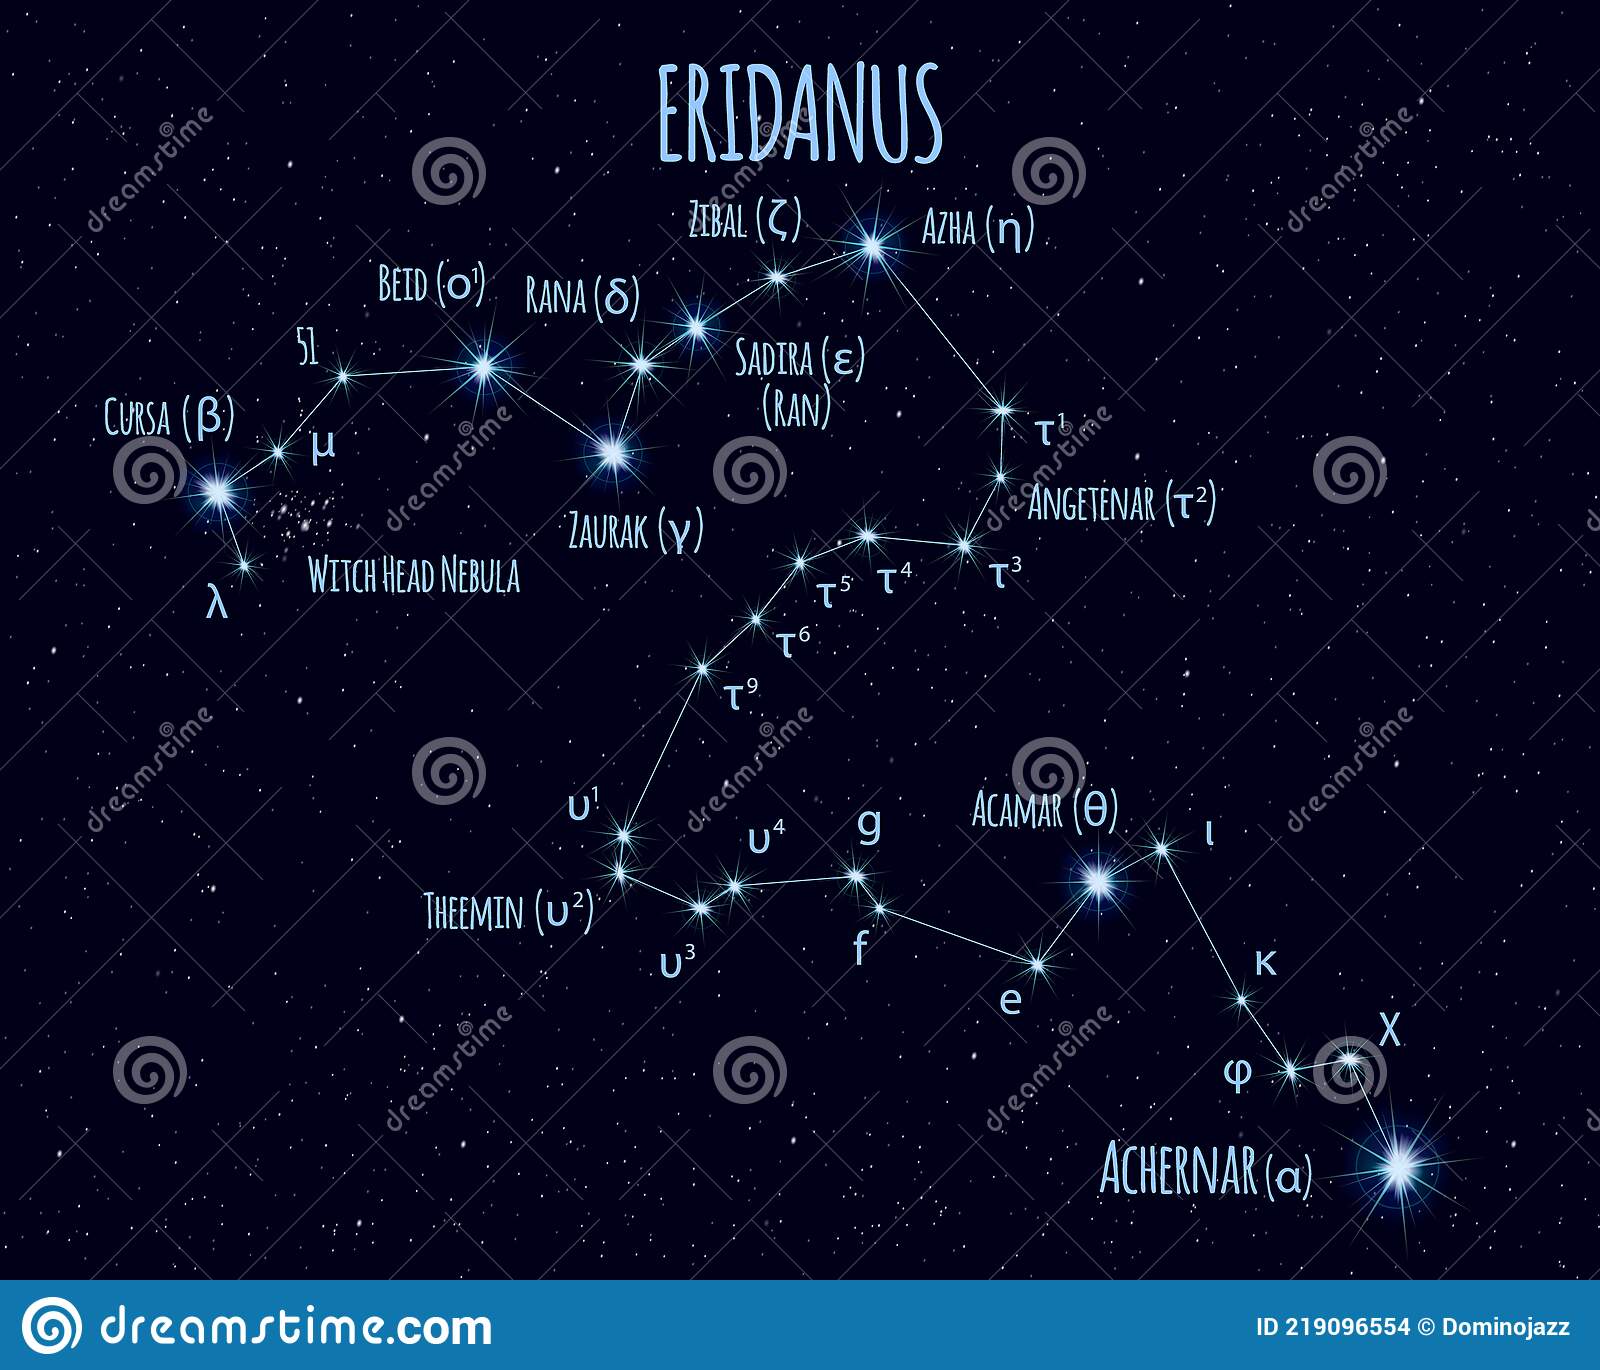 eridanus-constellation-vector-illustration-names-basic-stars-against-starry-sky-219096554.jpg